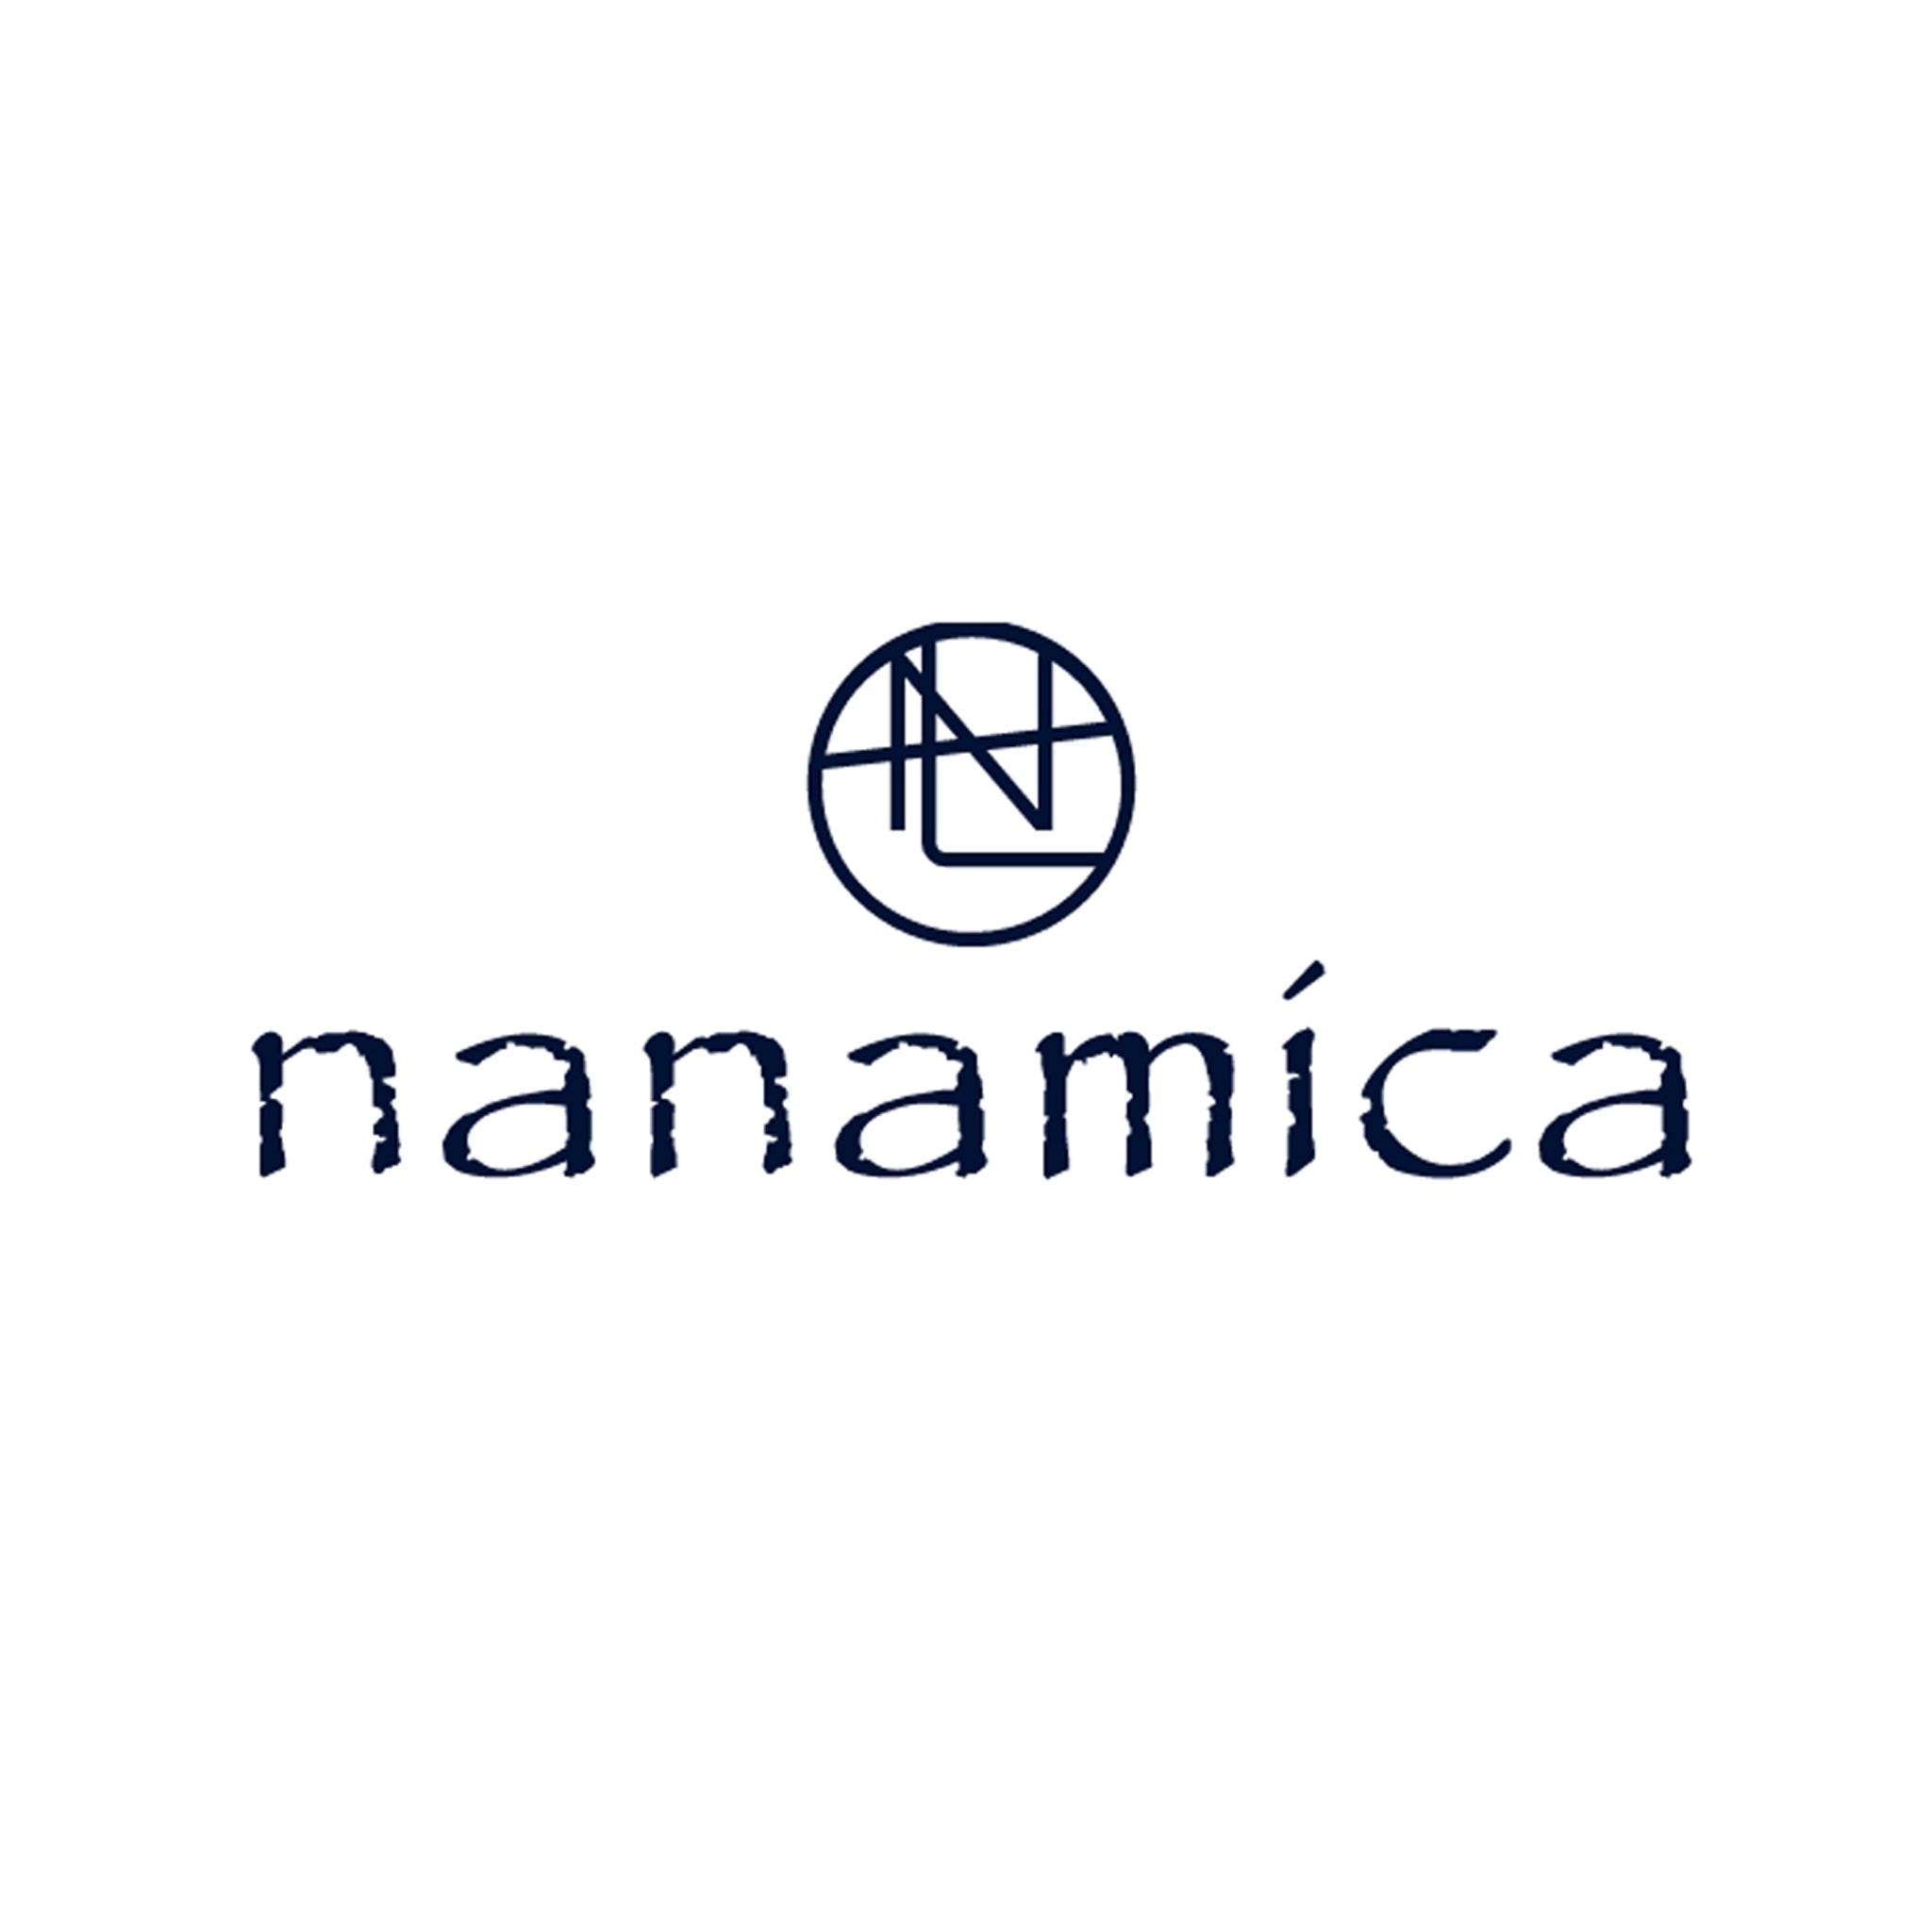 Nanamica – The Darkside Initiative